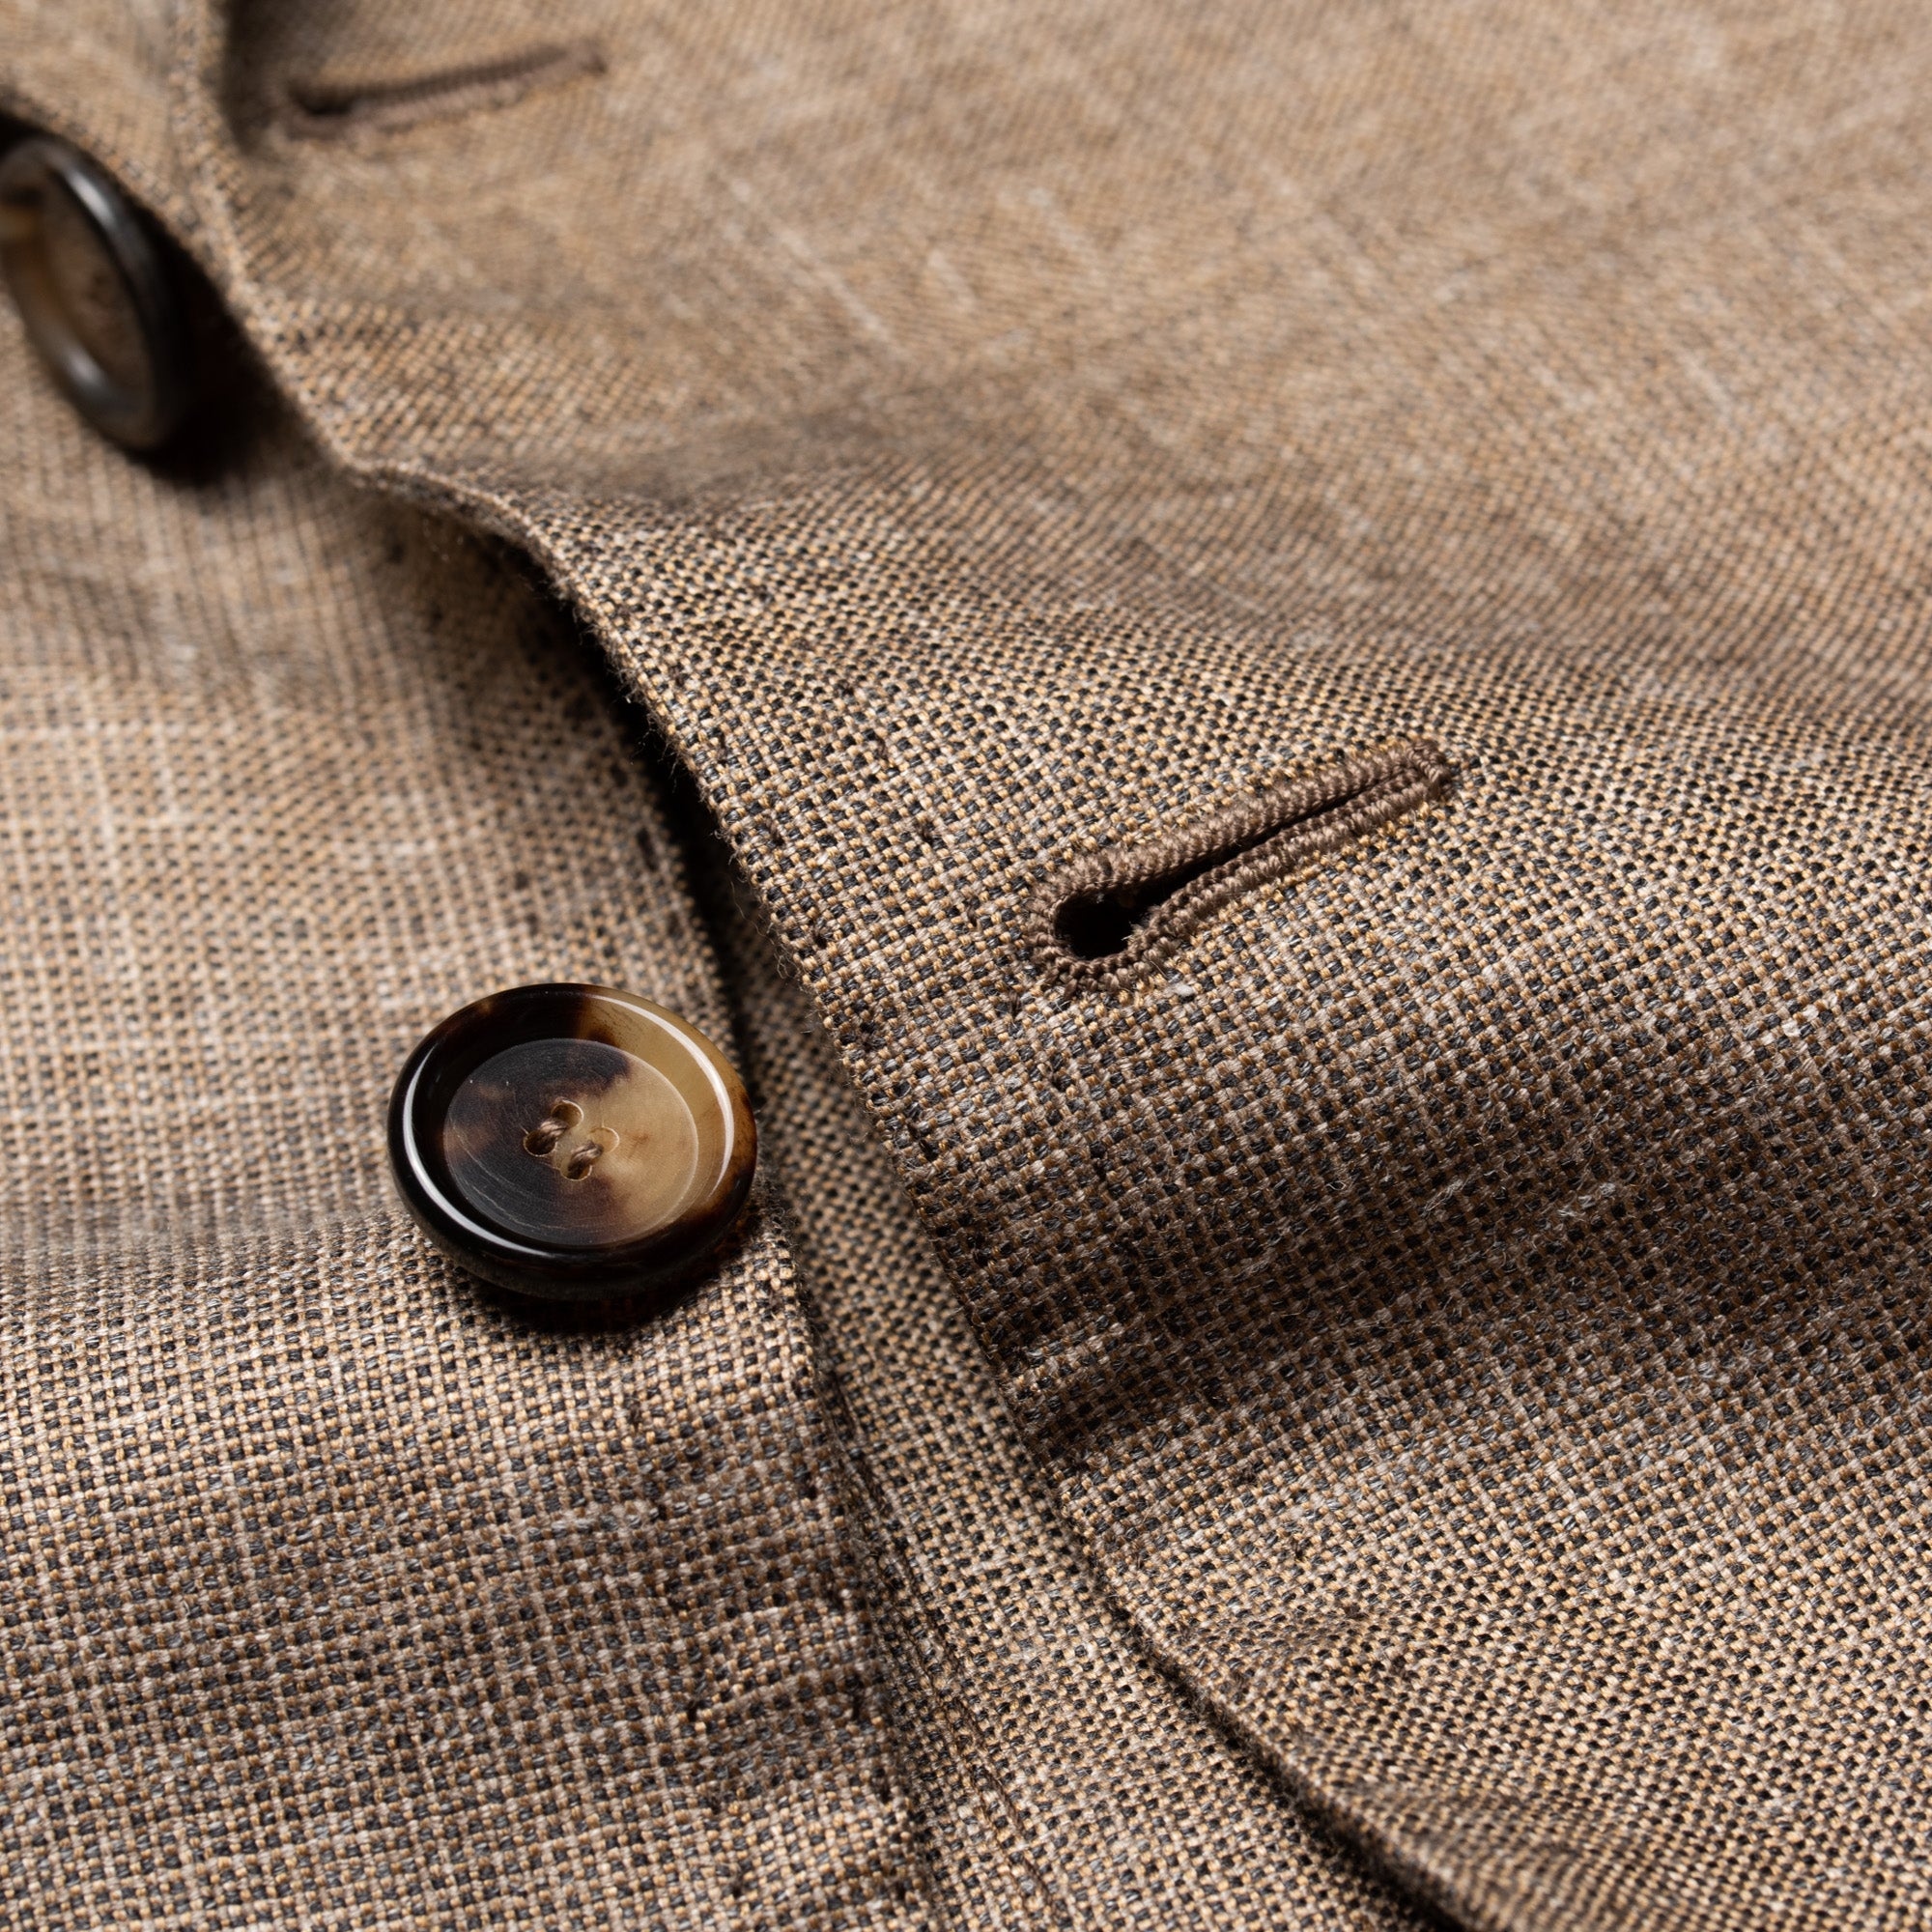 CESARE ATTOLINI for M.BARDELLI Khaki Cashmere-Silk-Cotton Jacket EU 50 NEW US 40